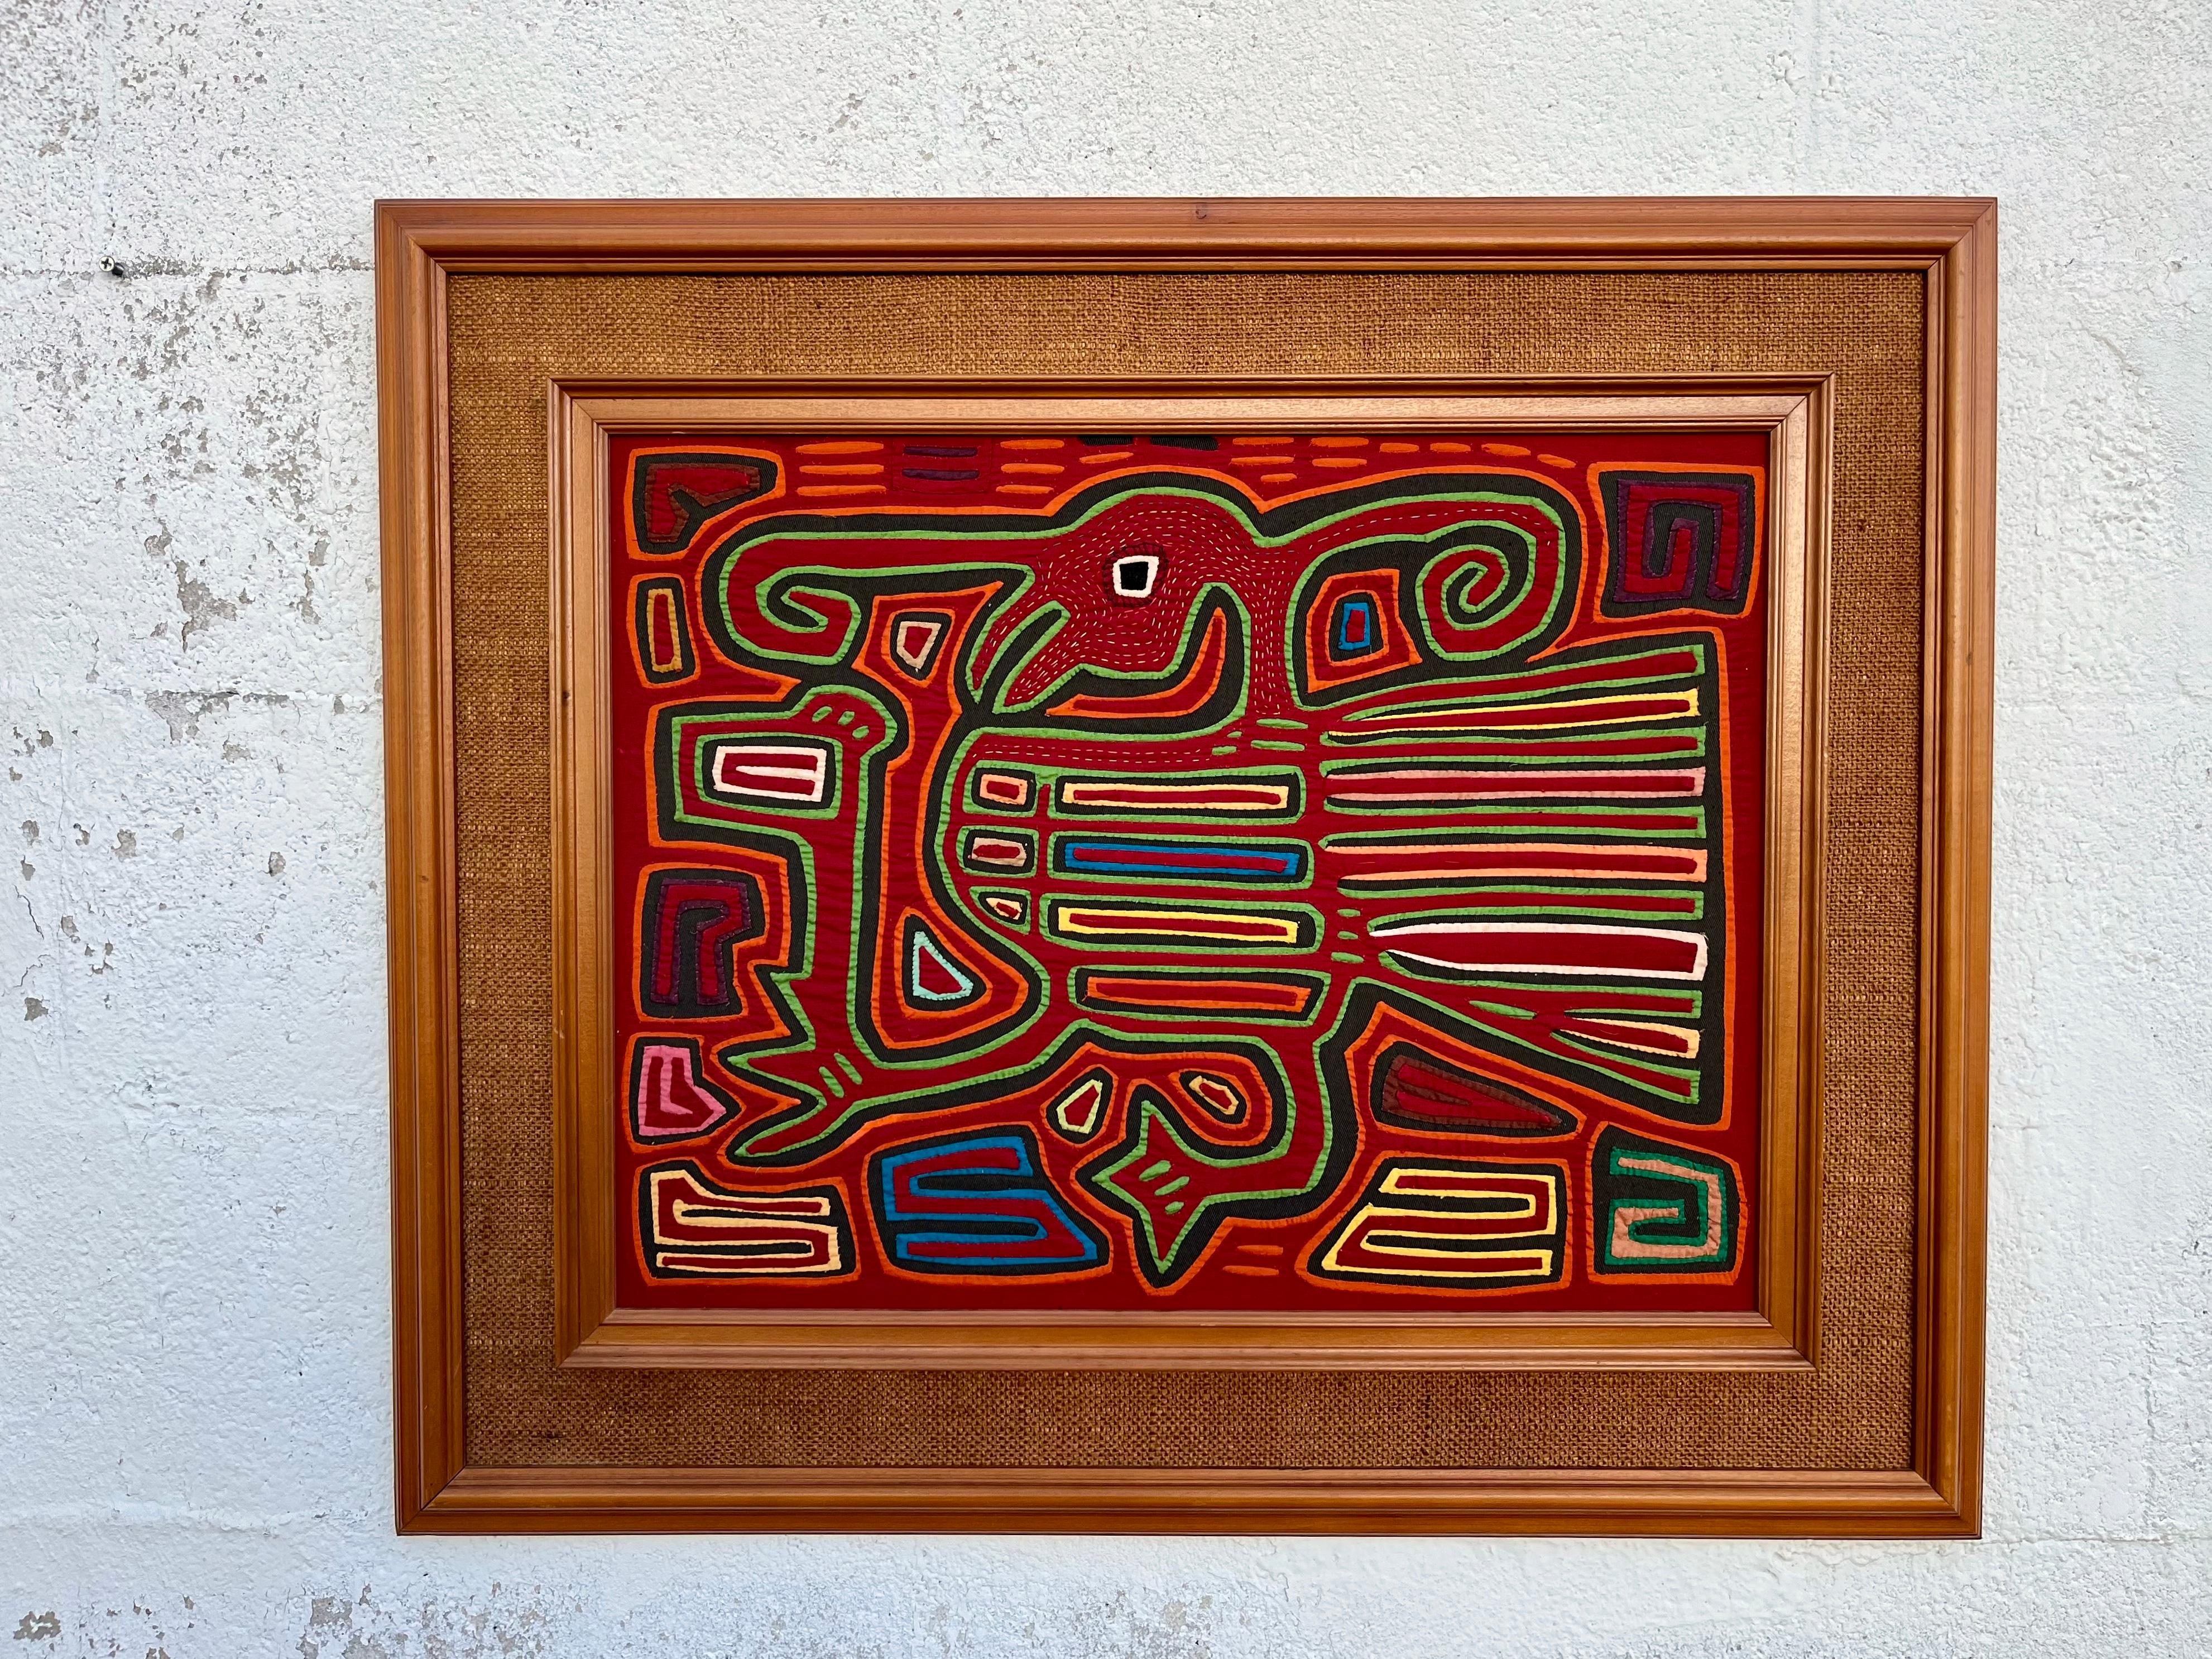 Große Vintage Tribal Mola gerahmt Handcrafted Textile Art. Circa 1960er Jahre
Mola ist ein traditionelles Textilhandwerk, das aus Lagen farbiger Stoffe besteht, die mit Hilfe von Applikationstechniken genäht und geschnitten werden, um Muster und